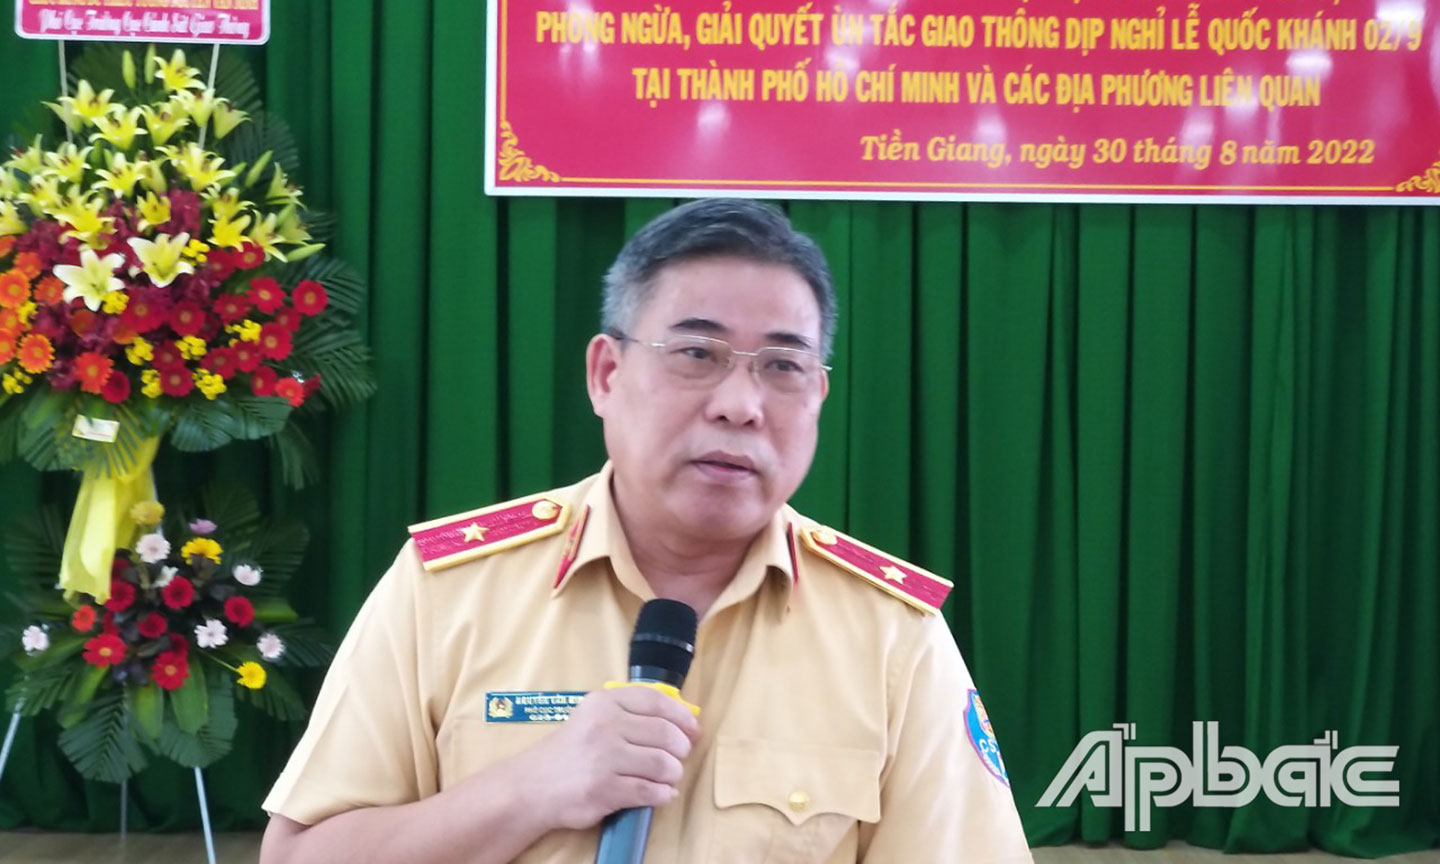 Thiếu tướng Nguyễn Văn Minh chỉ đạo tại Hội nghị.